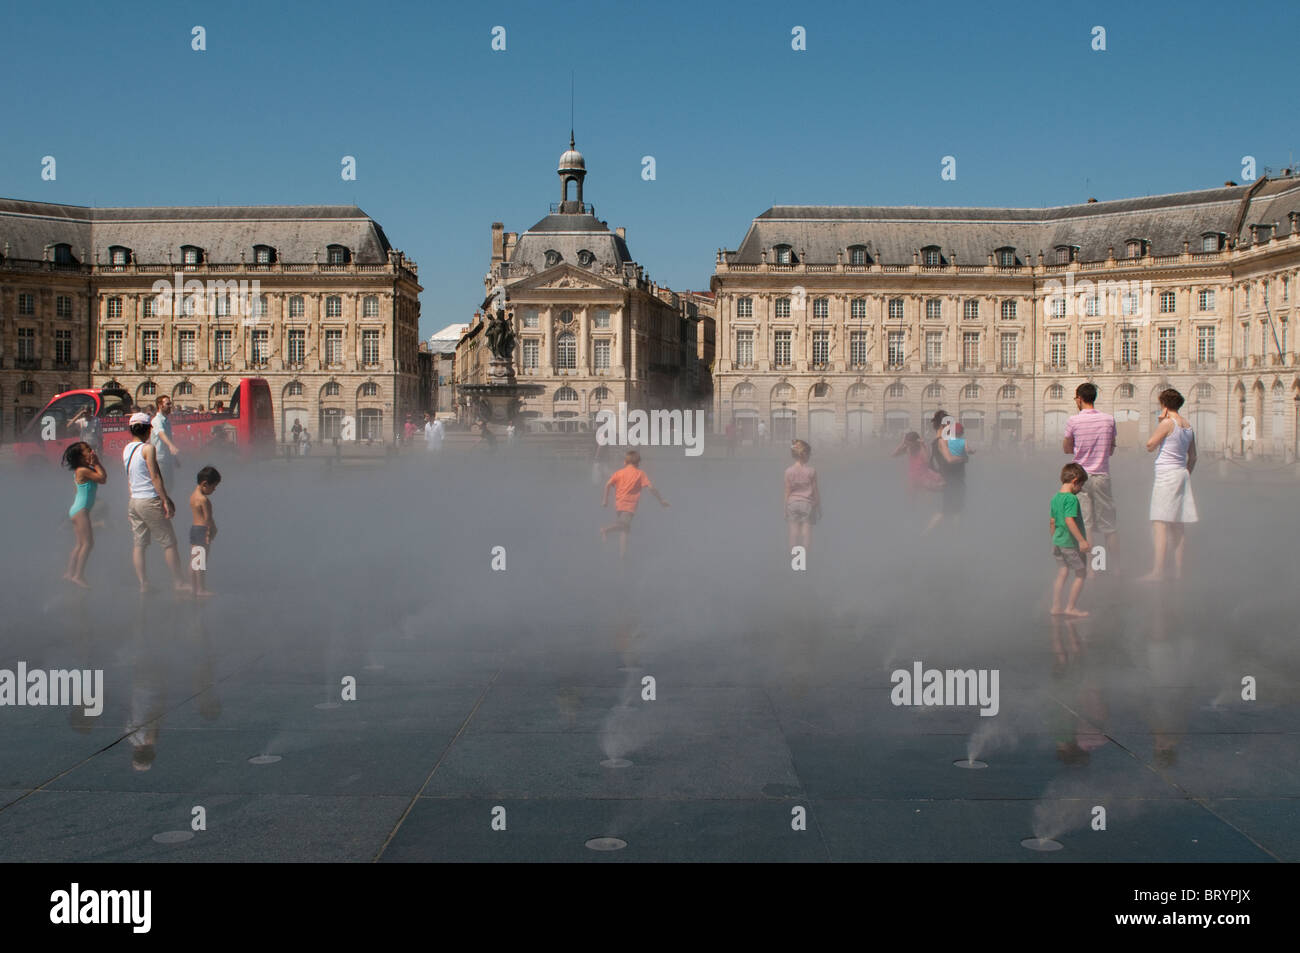 Effet de brouillard au miroir d'eau en face de la place de la Bourse, Bordeaux, France Banque D'Images